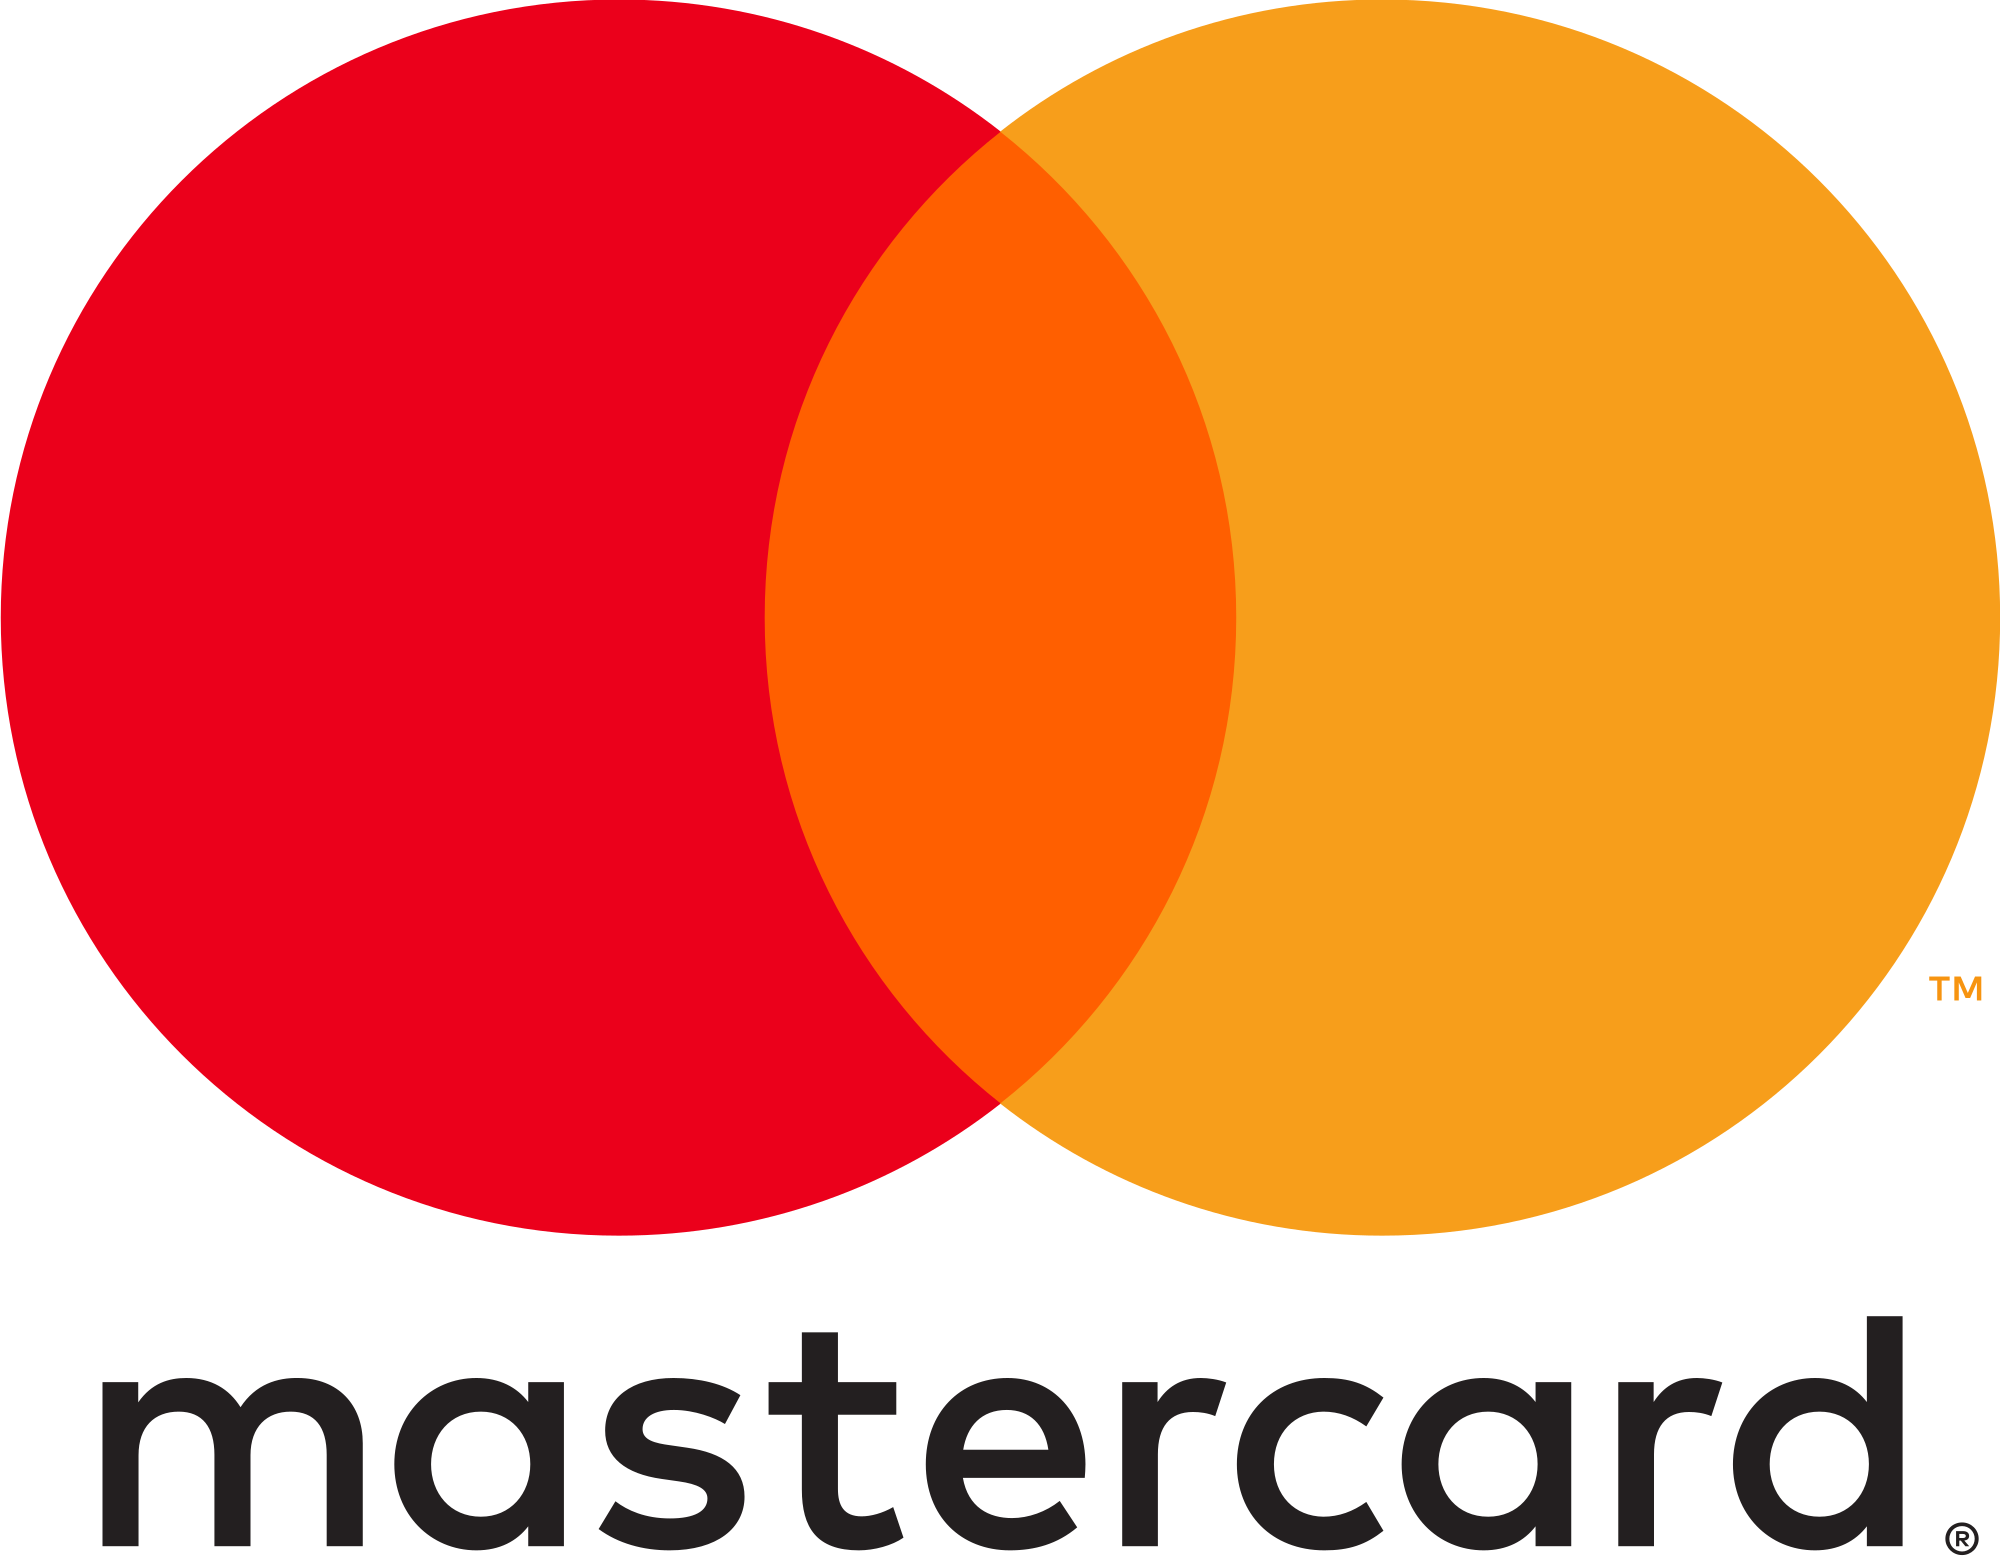 MasterCard Logo Vector